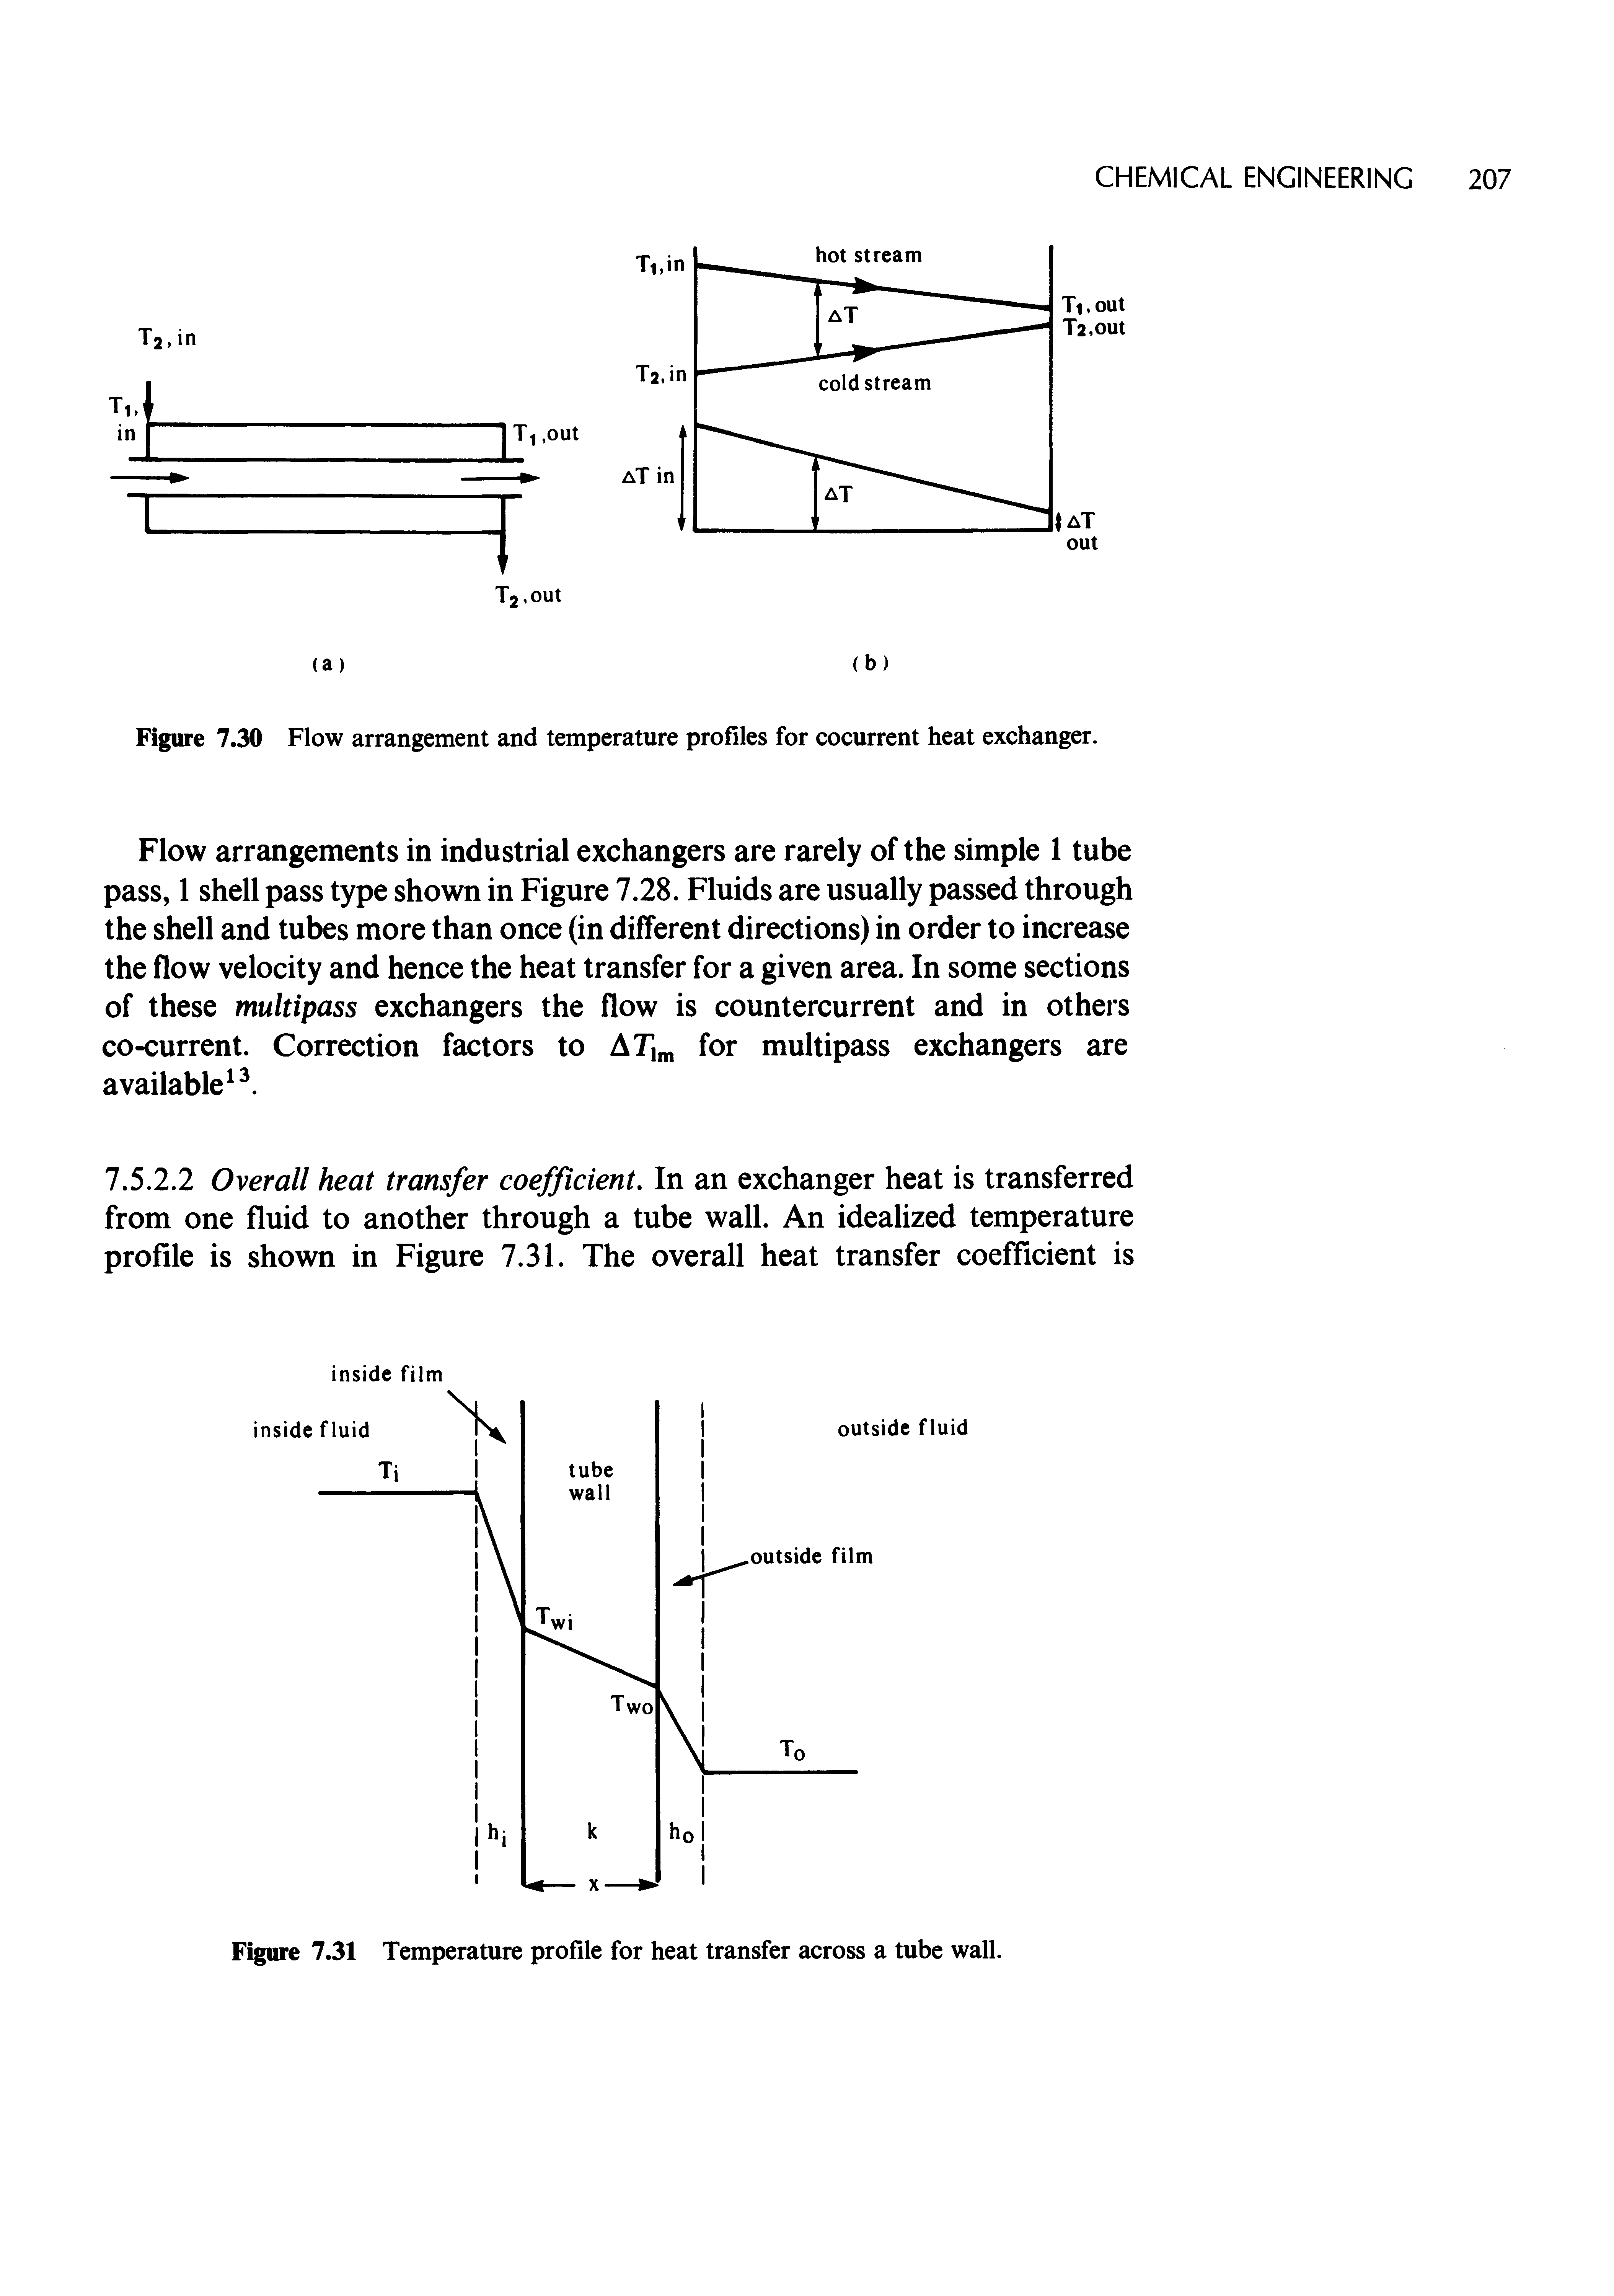 Figure 7.30 Flow arrangement and temperature profiles for cocurrent heat exchanger.